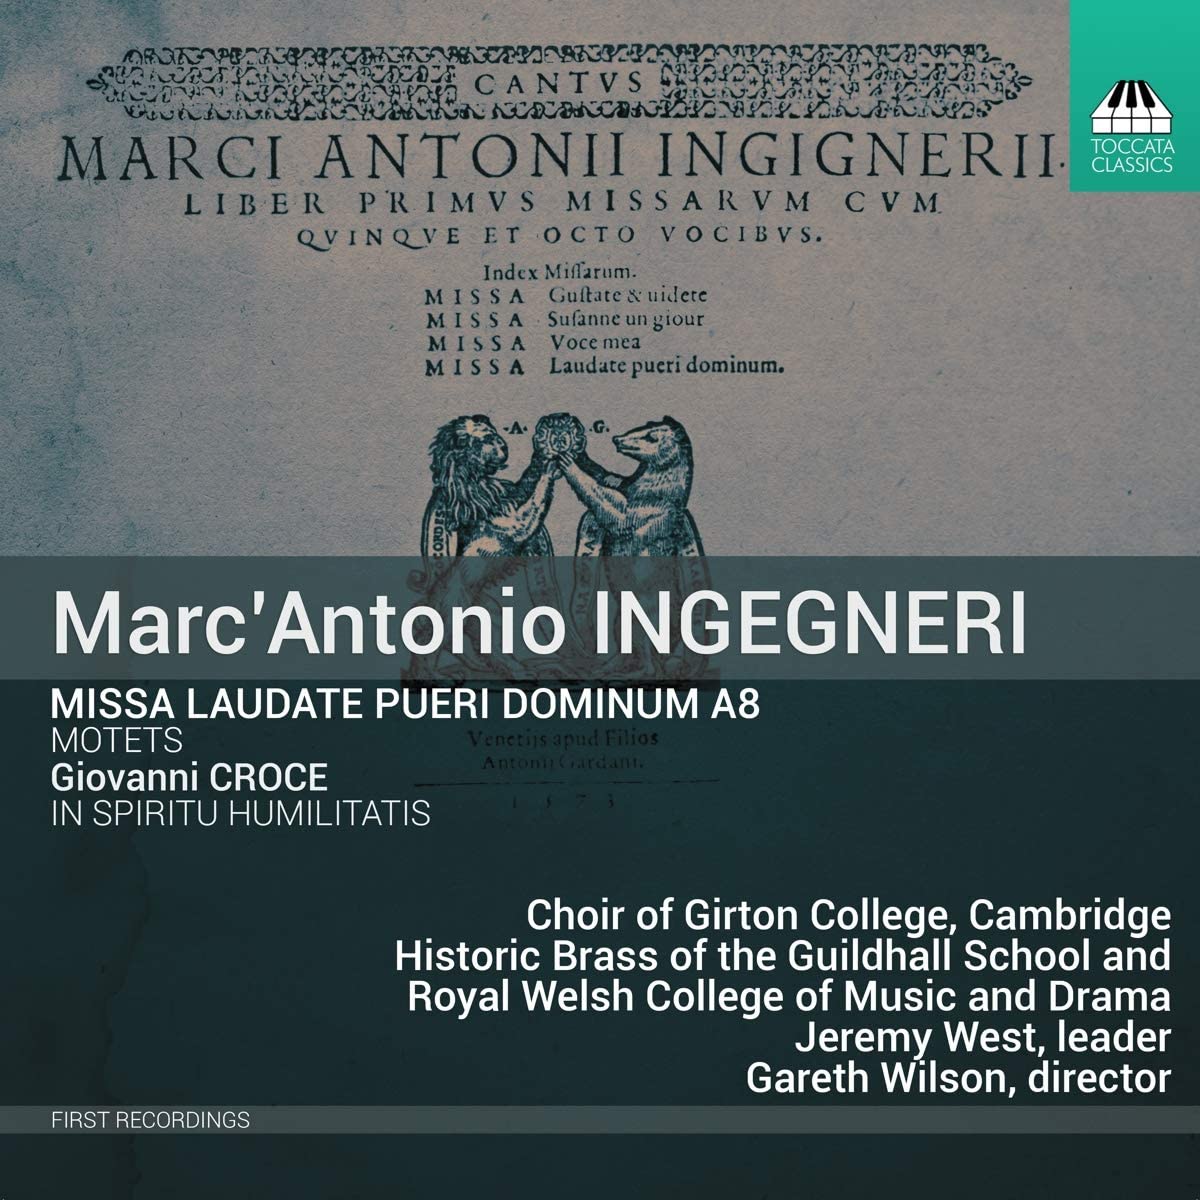 Ingegneri's Missa Laudate pueri Dominum CD cover